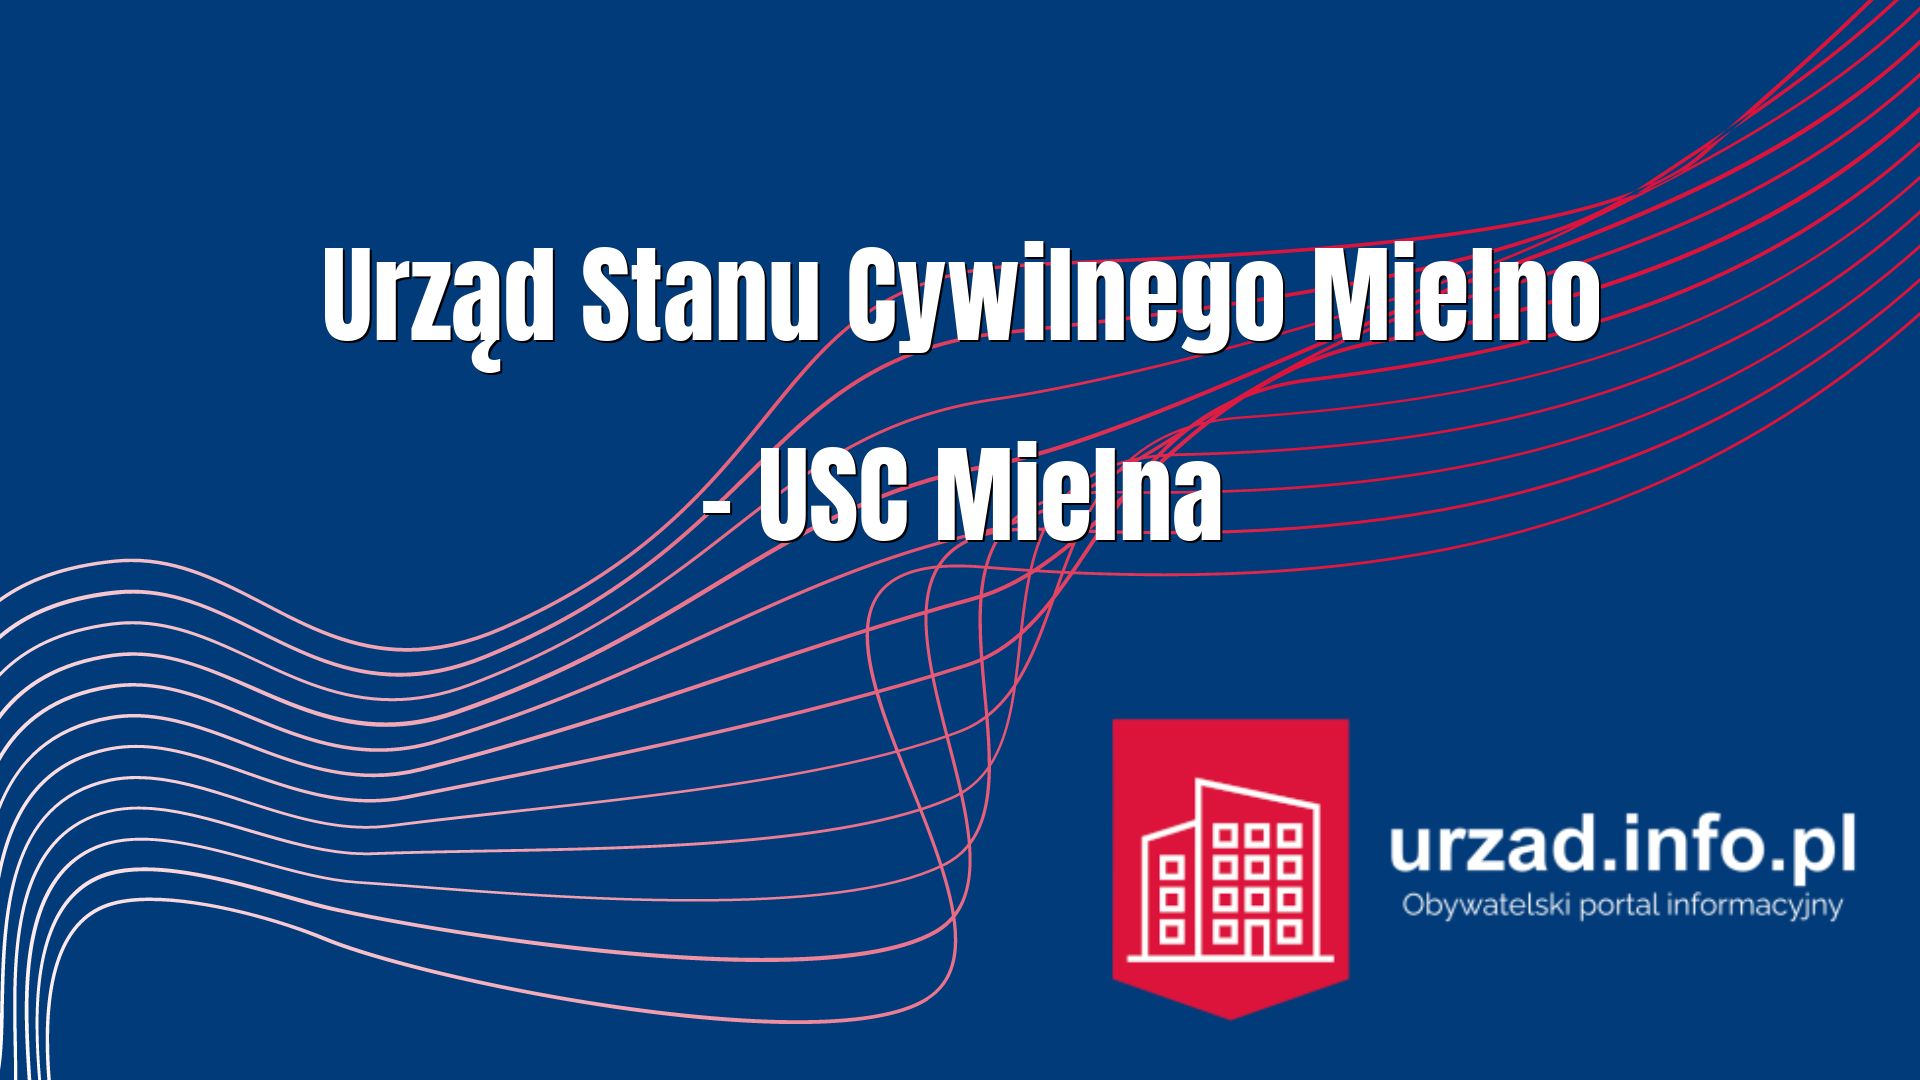 Urząd Stanu Cywilnego Mielno – USC Mielna